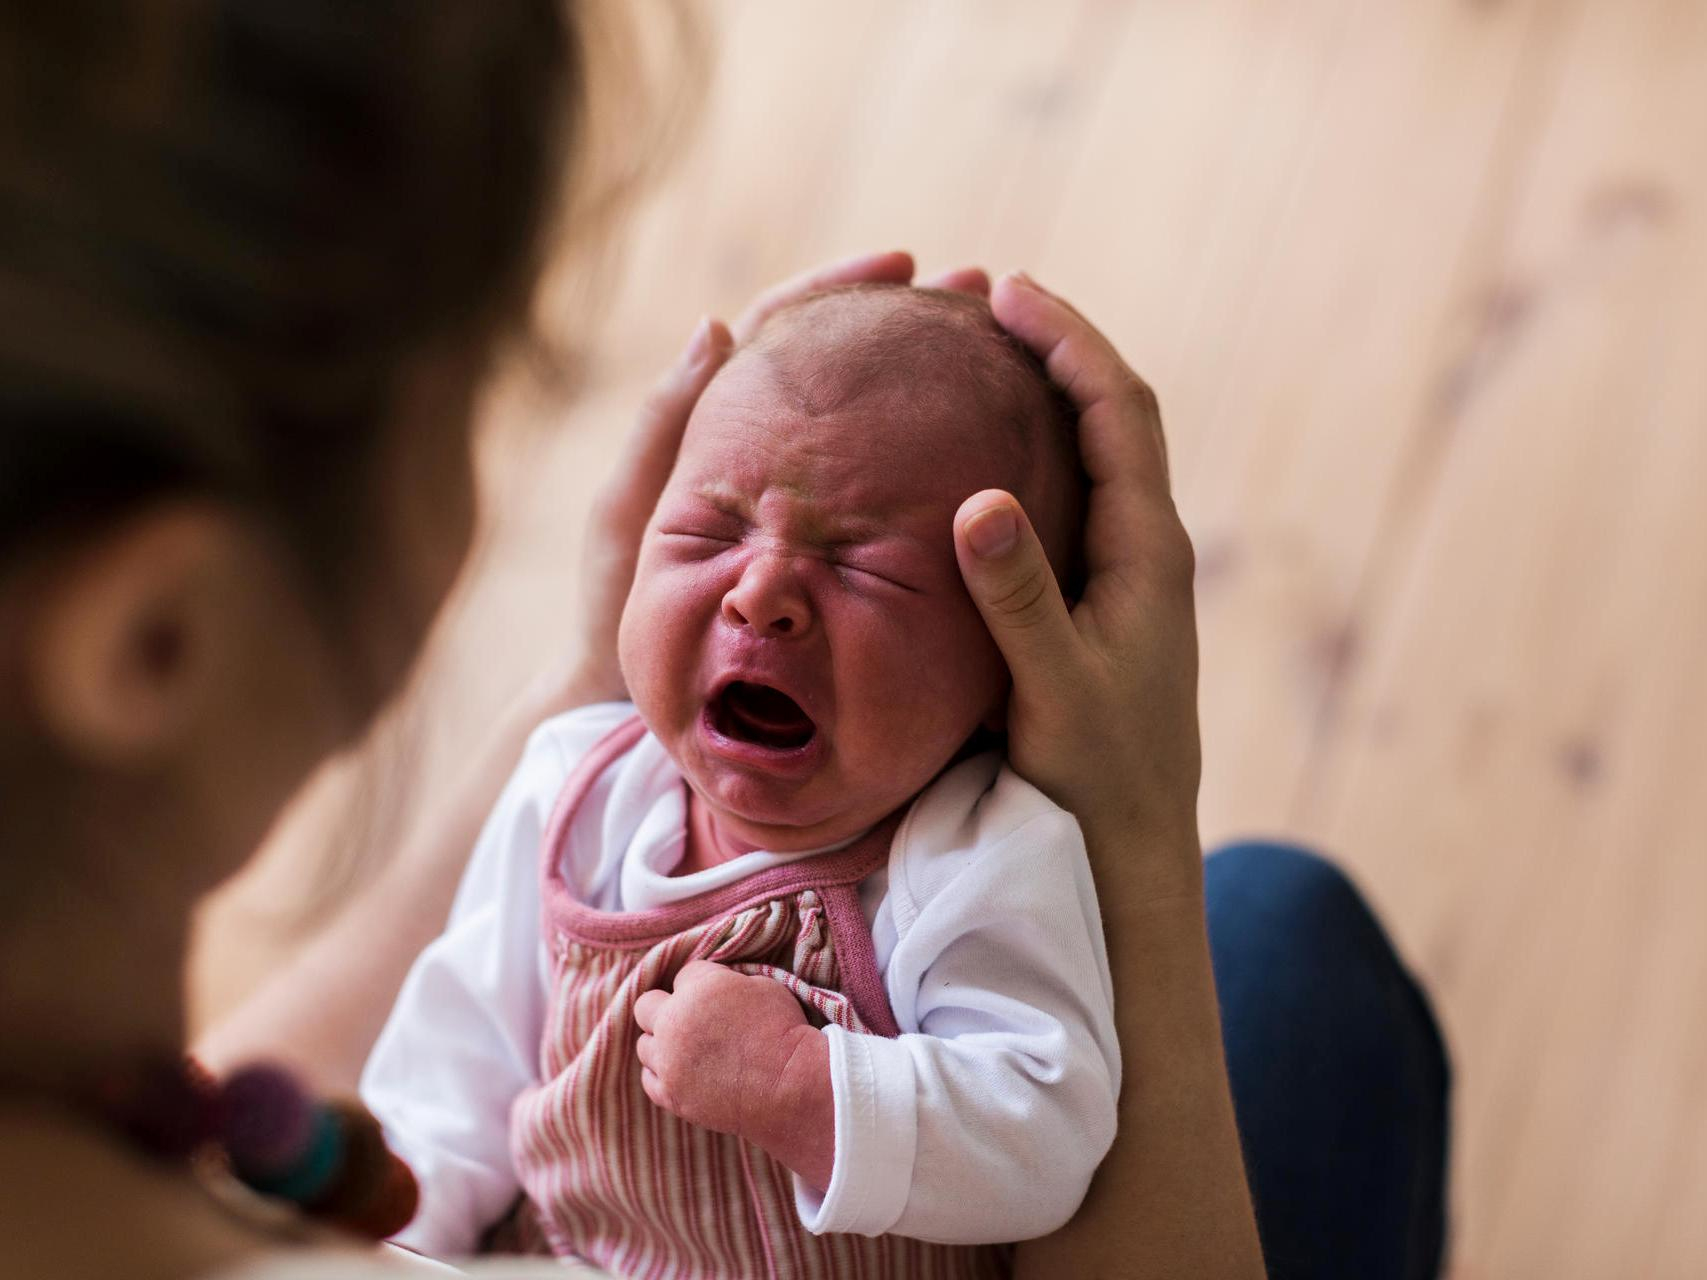 Signale Deuten: Was Will Mein Baby Mir Sagen? in Baby Schreit Plötzlich Schrill